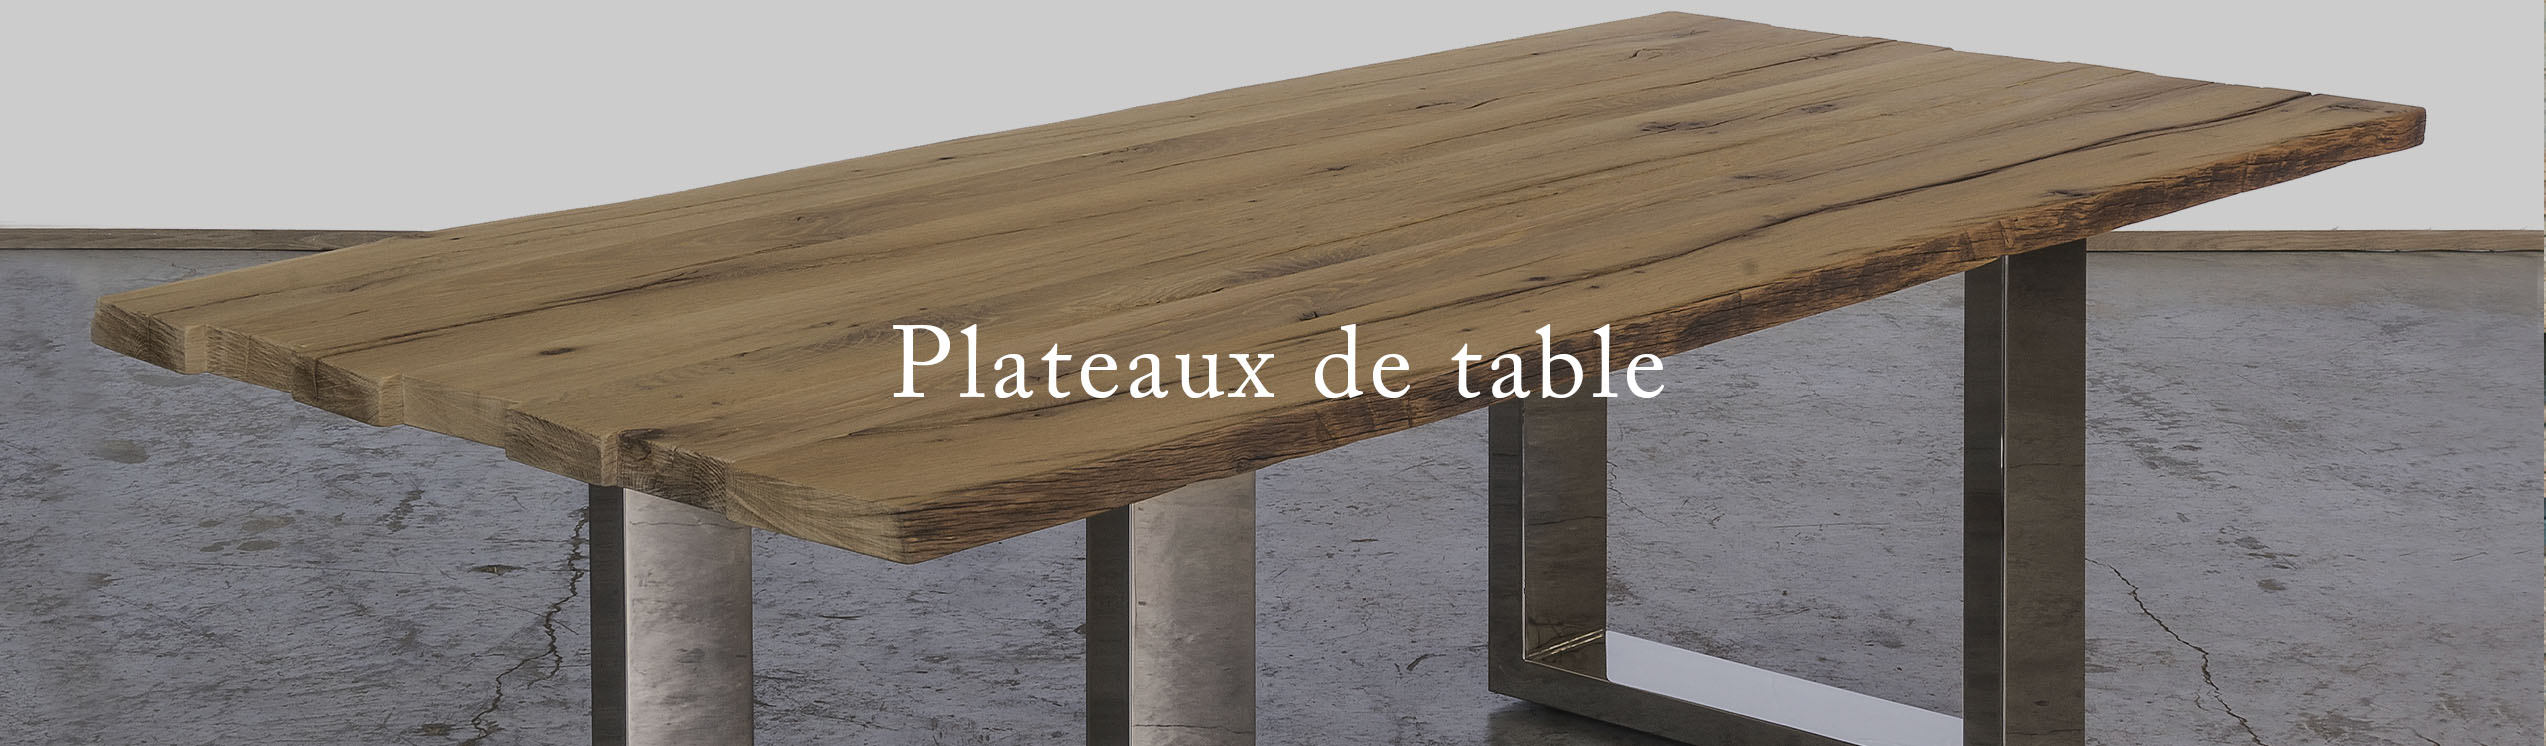 CarreSol - Plateaux de table - 2023